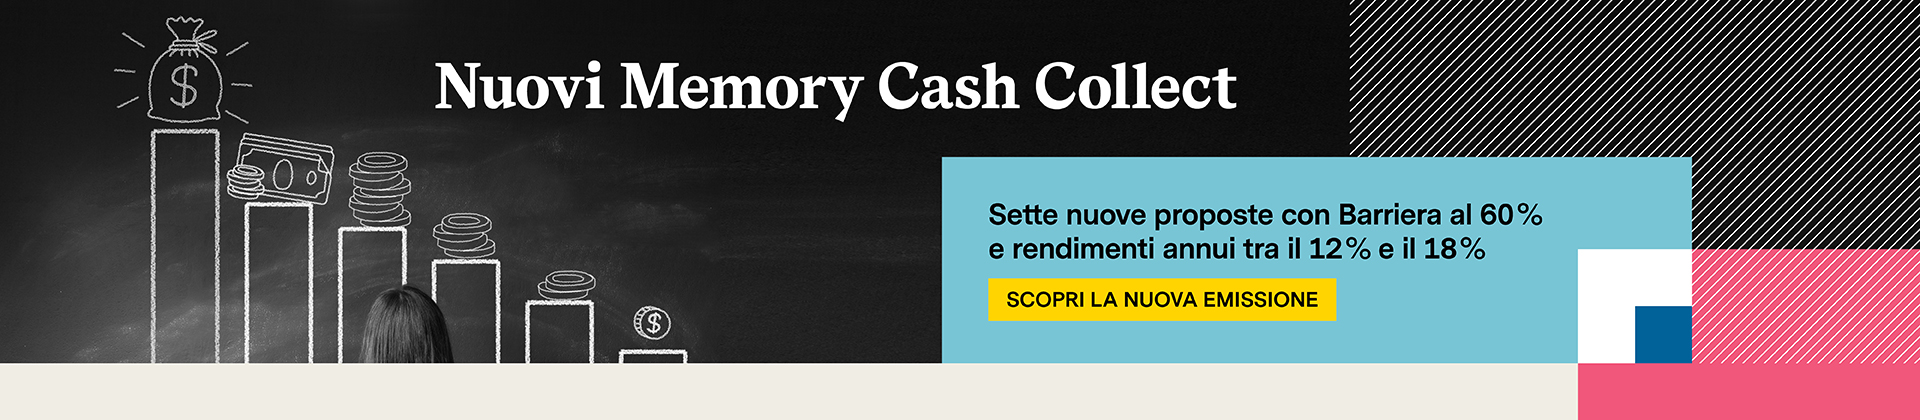 Nuovi 7 memory cash collect